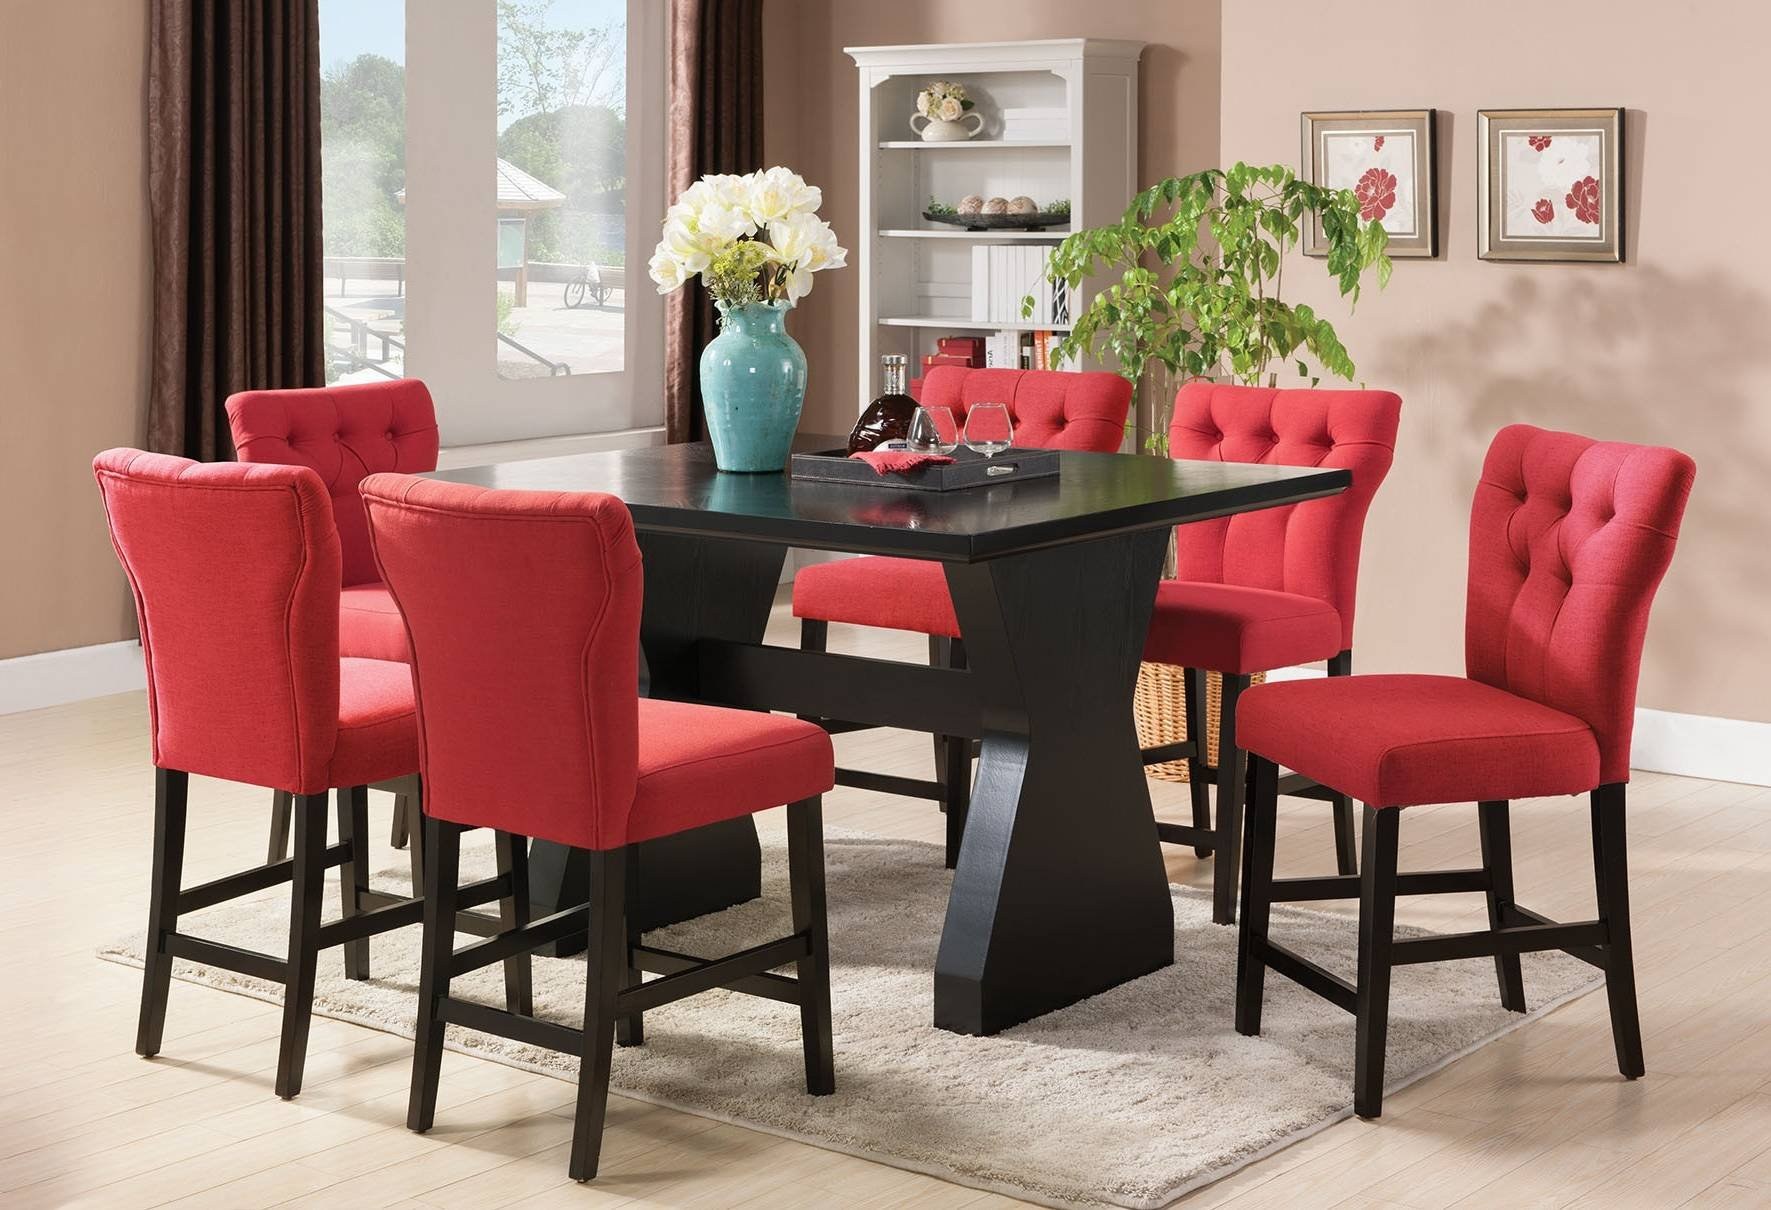 Мягкий стол стул. Мягкие стулья в интерьере. Красные стулья в интерьере. Кухонный стол и стулья. Мягкие стулья для кухни.